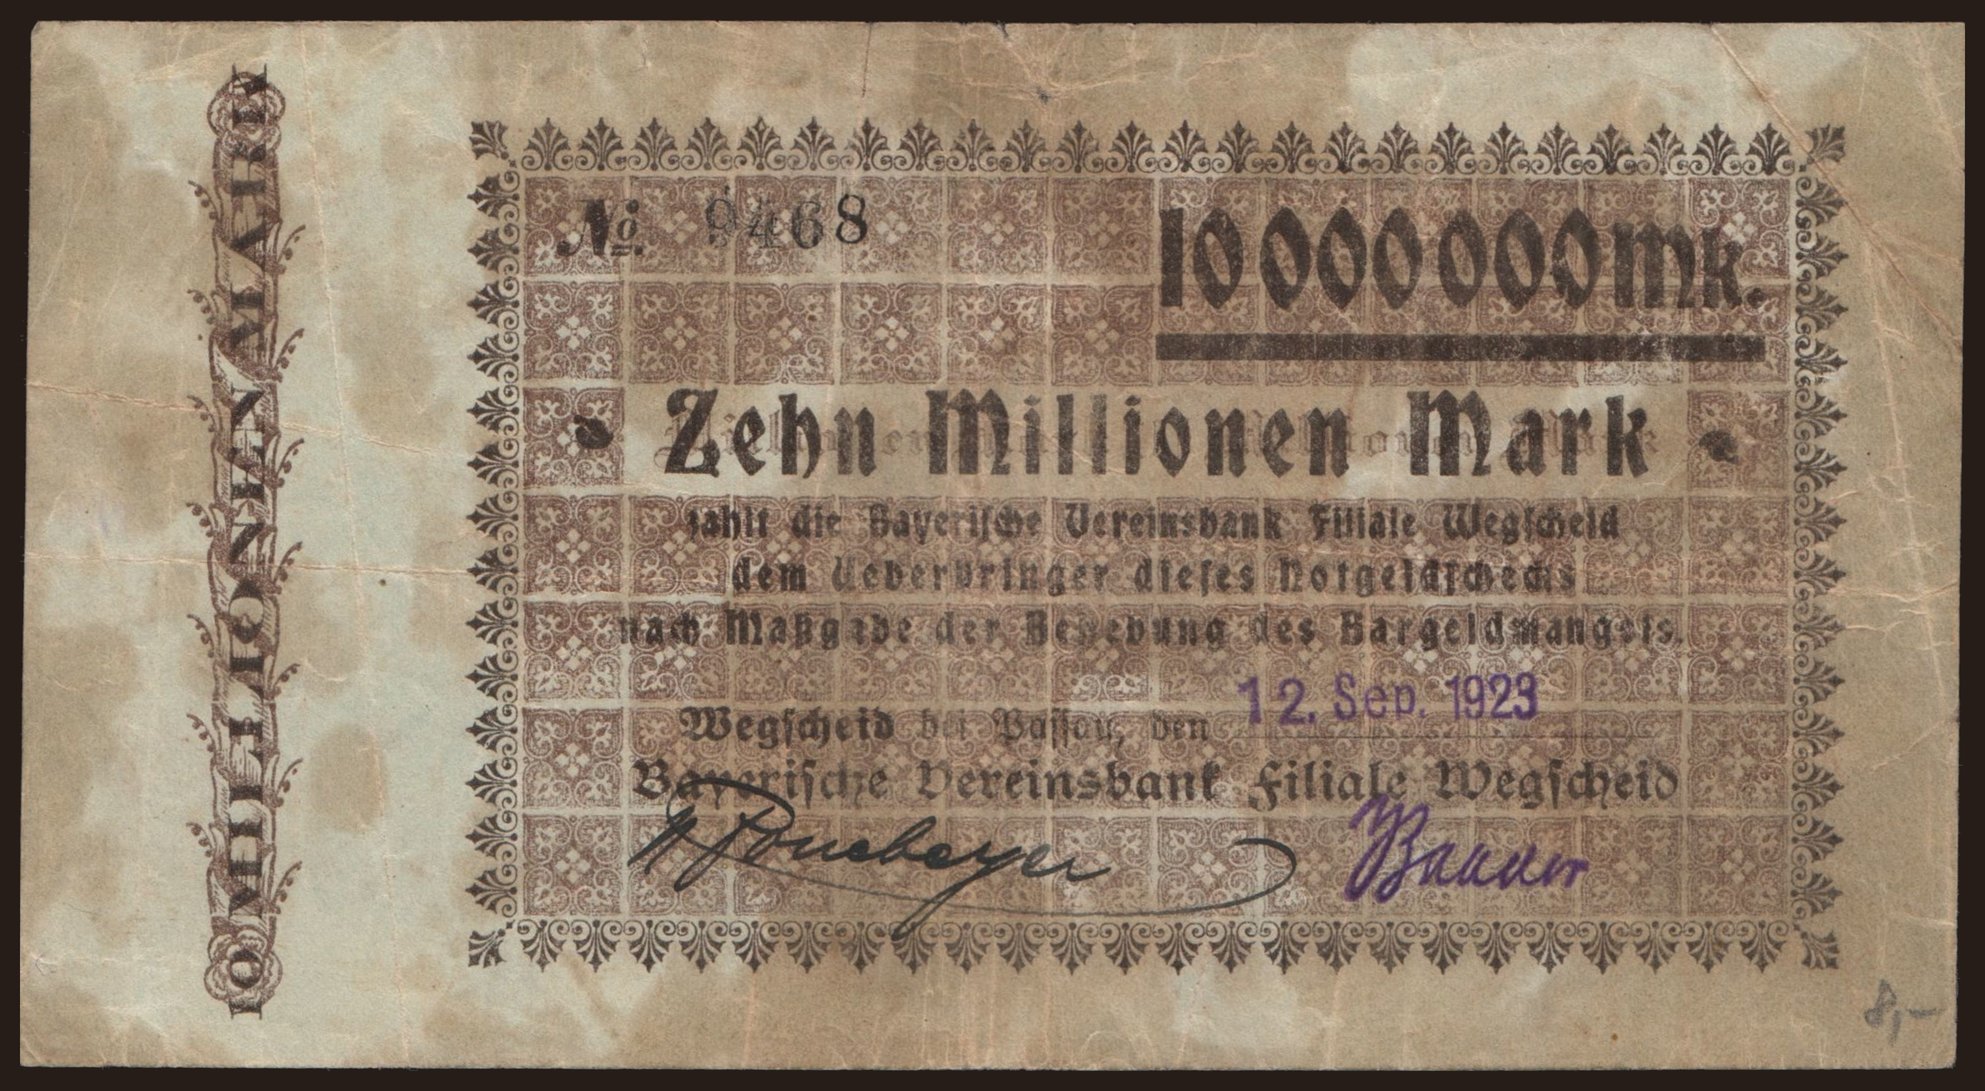 Wegscheid/ Bayerische Vereinsbank, 10.000.000 Mark, 1923